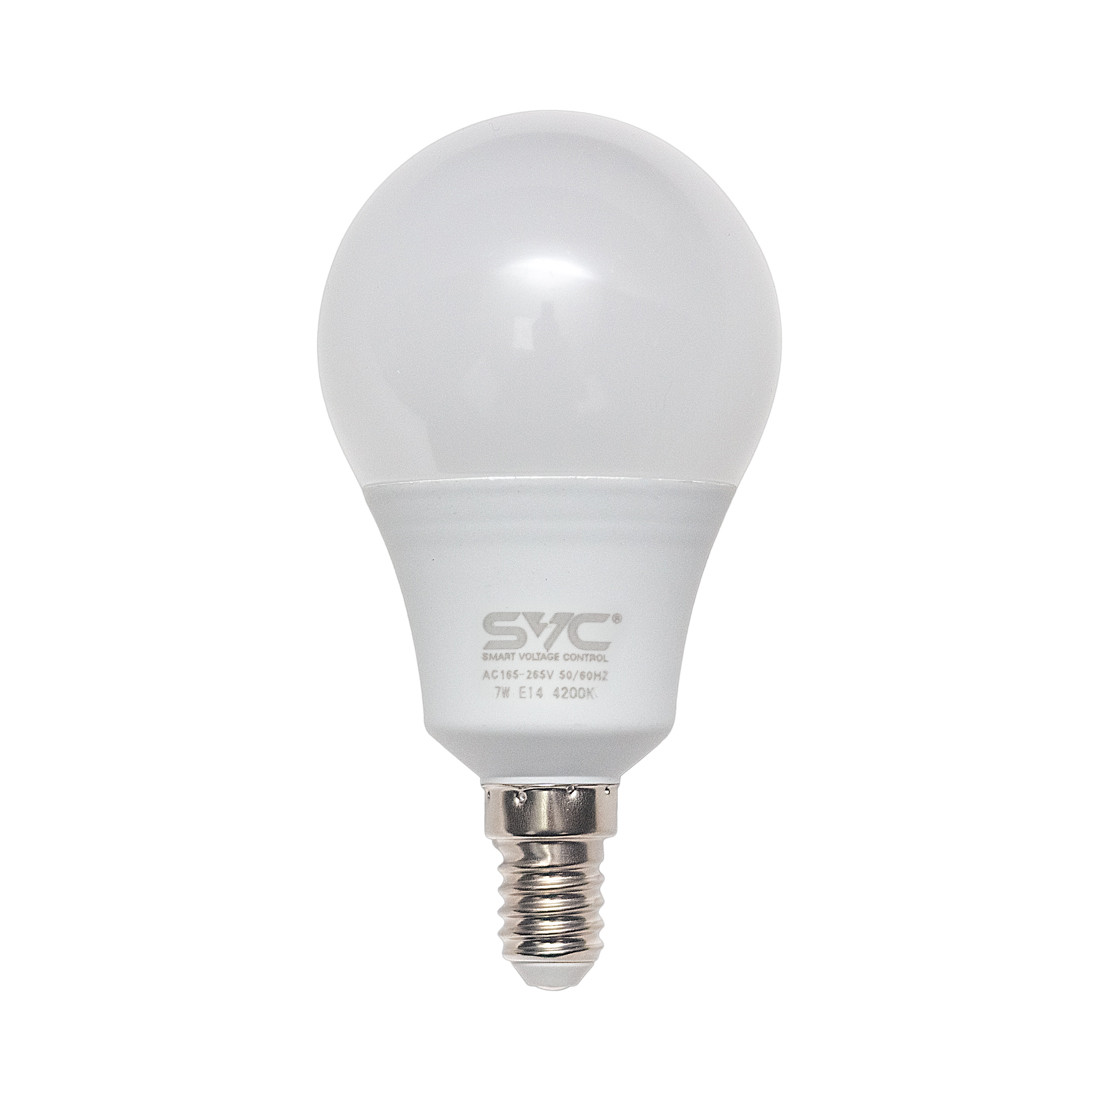 Эл. лампа светодиодная SVC LED G45-7W-E14-4200K  Нейтральный G45-7W-E14-4200K